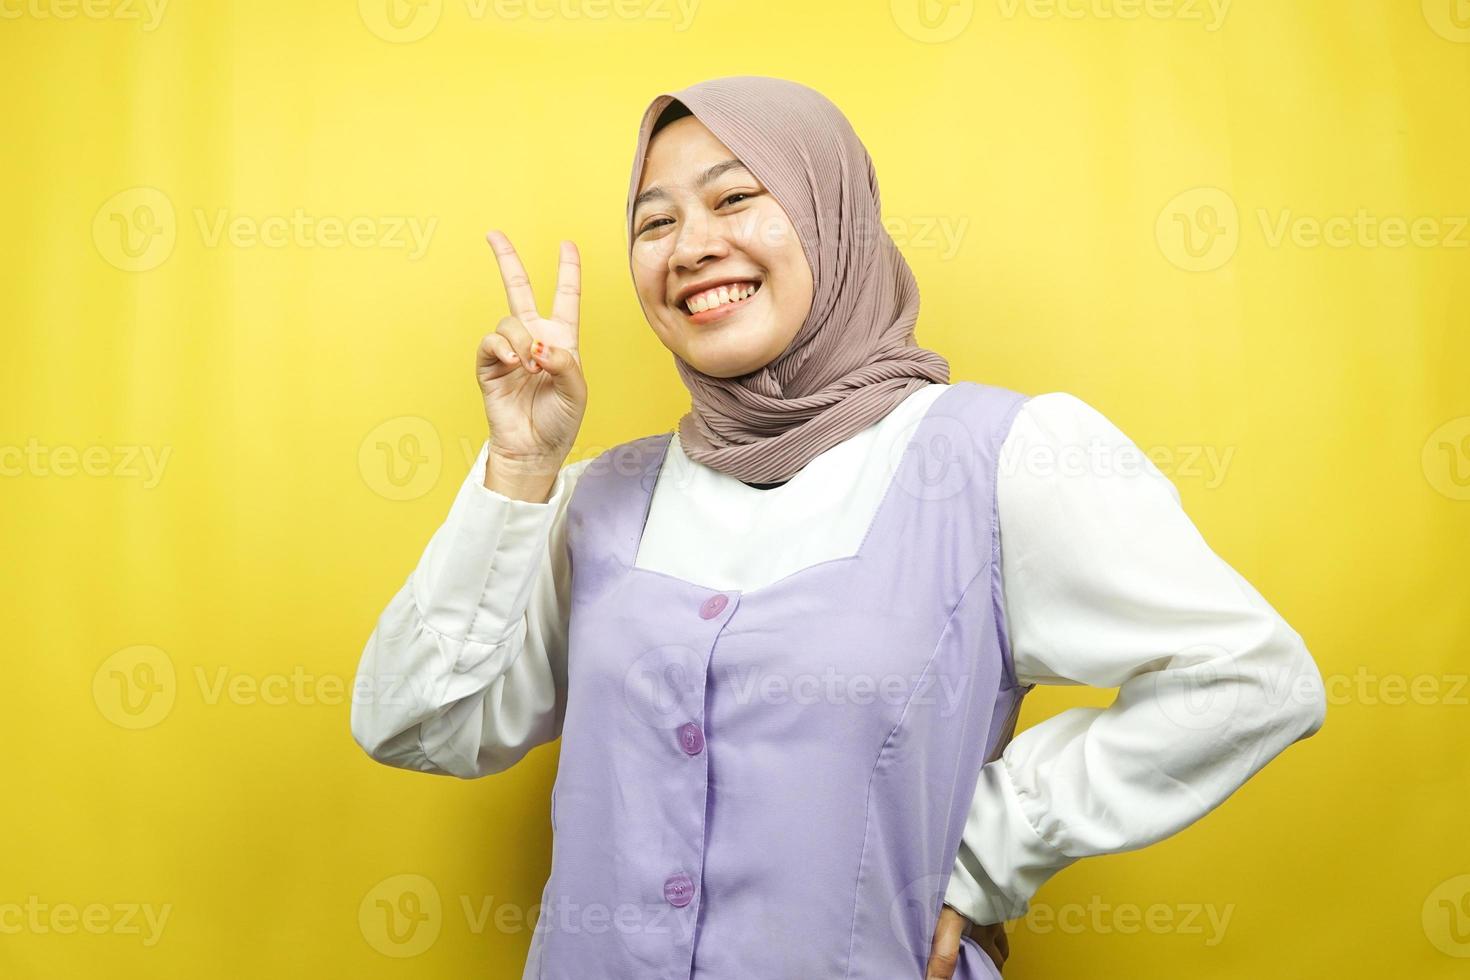 schöne junge asiatische muslimische frau schmollend mit v-signierten händen, ok, gute arbeit, vereinbarung, sieg, blick in die kamera einzeln auf gelbem hintergrund foto